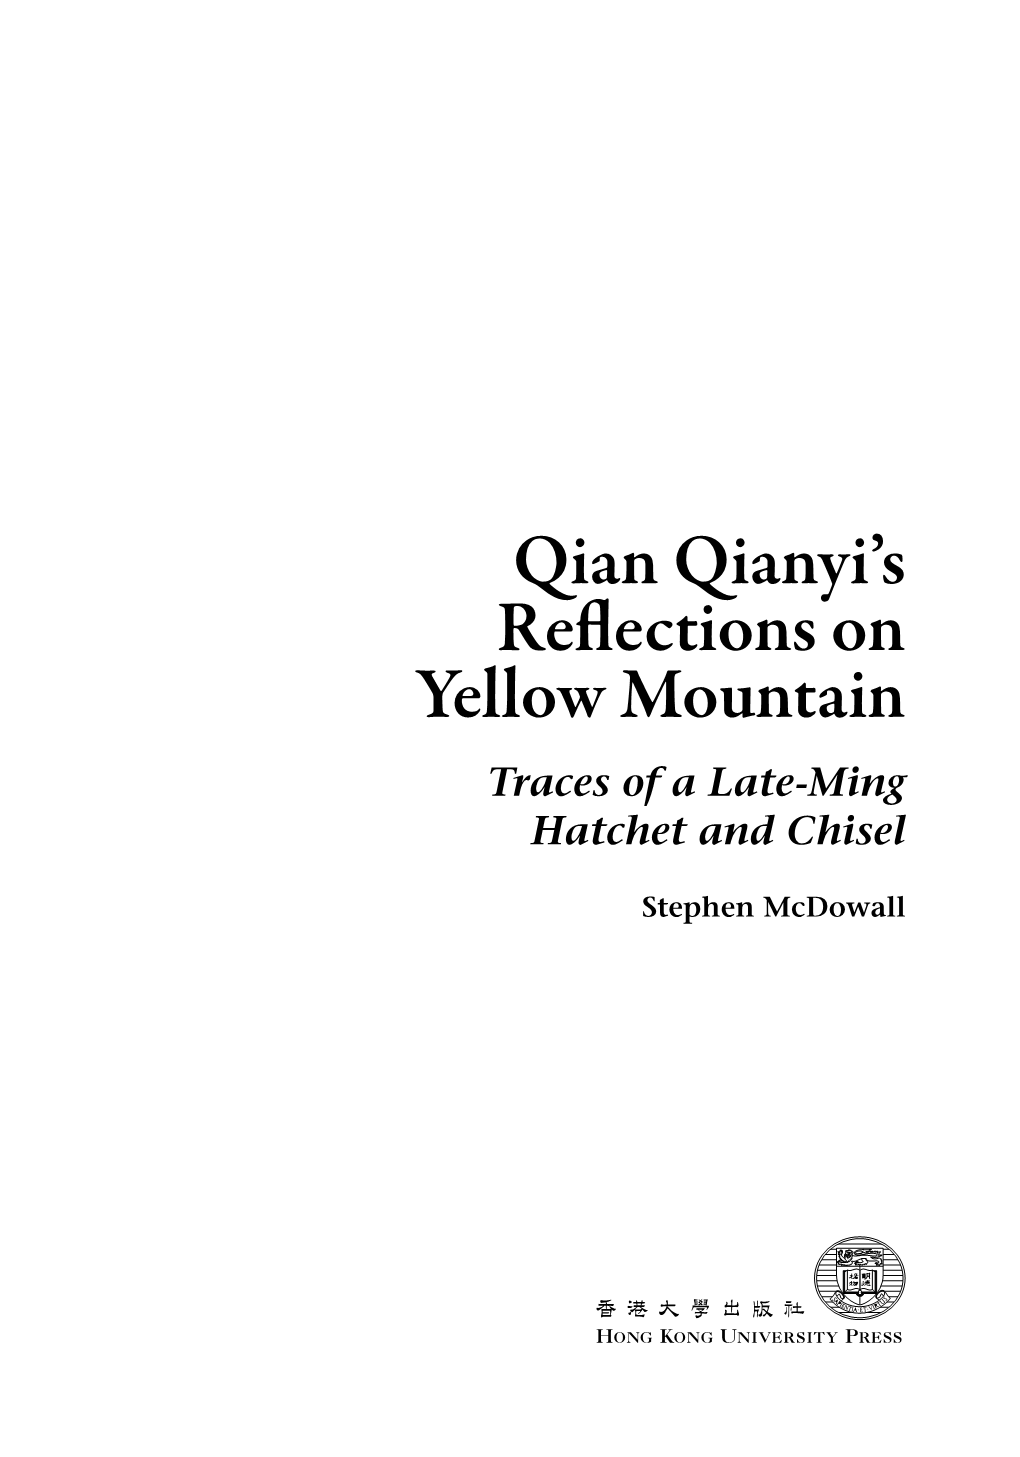 Qian Qianyi's Reflections on Yellow Mountain